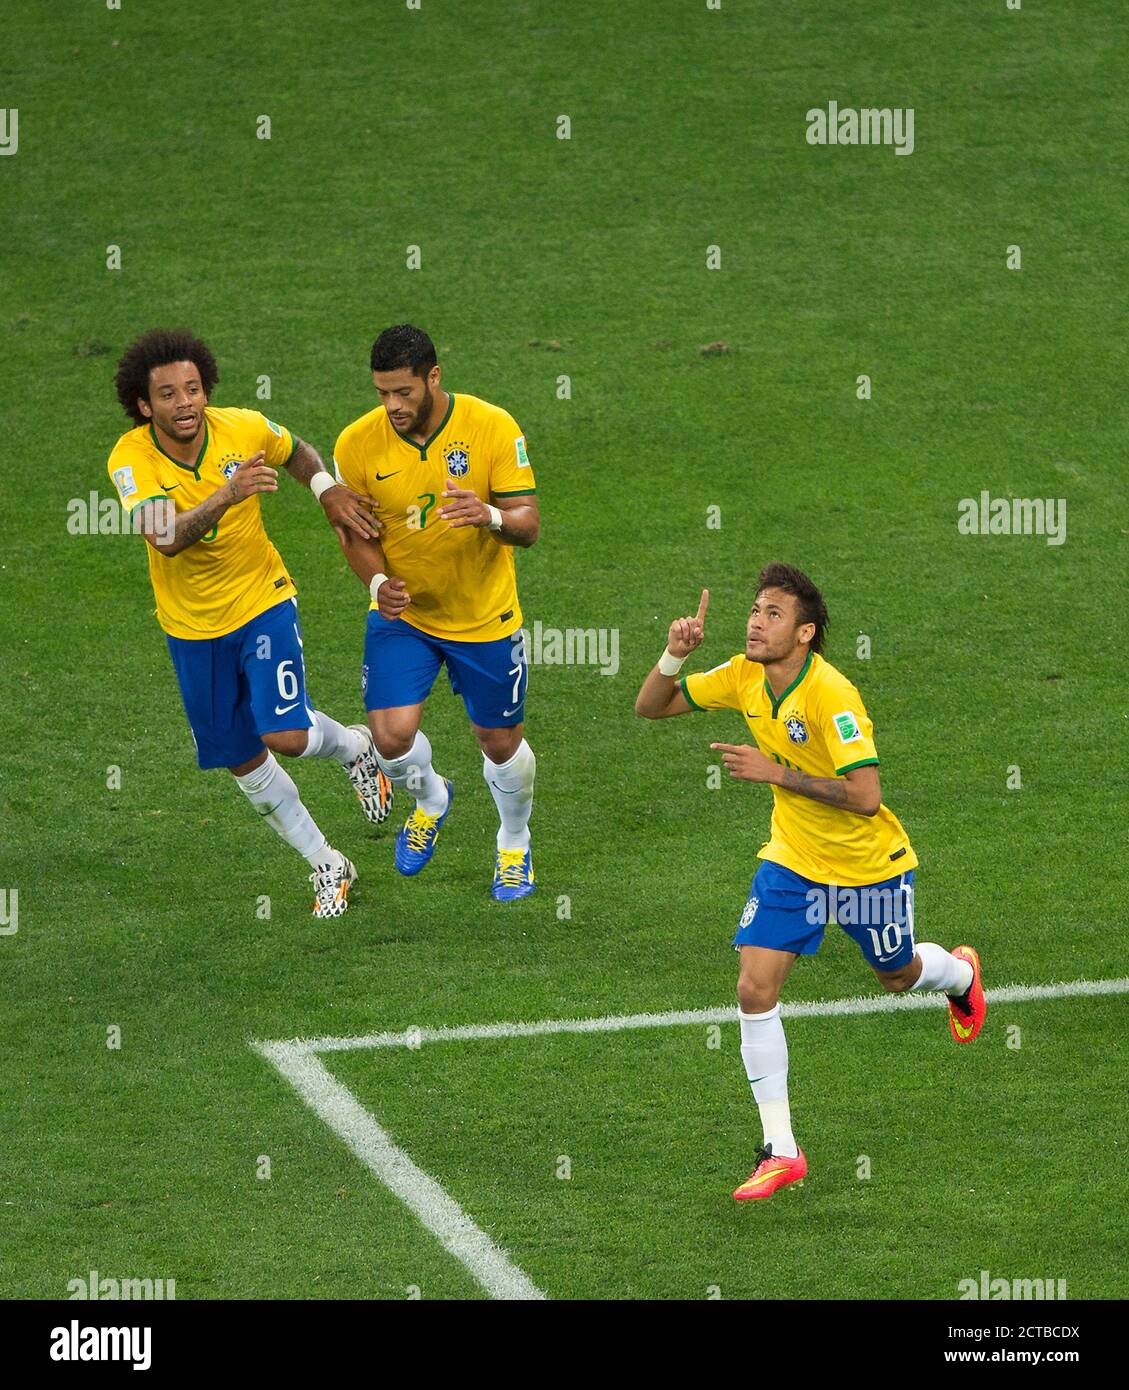 Neymar célèbre son égaliseur pour le Brésil 1-1 Brésil / Croatie - Brésil coupe du monde 2014. Photo : Mark pain / Alay 12/6/2014 Banque D'Images